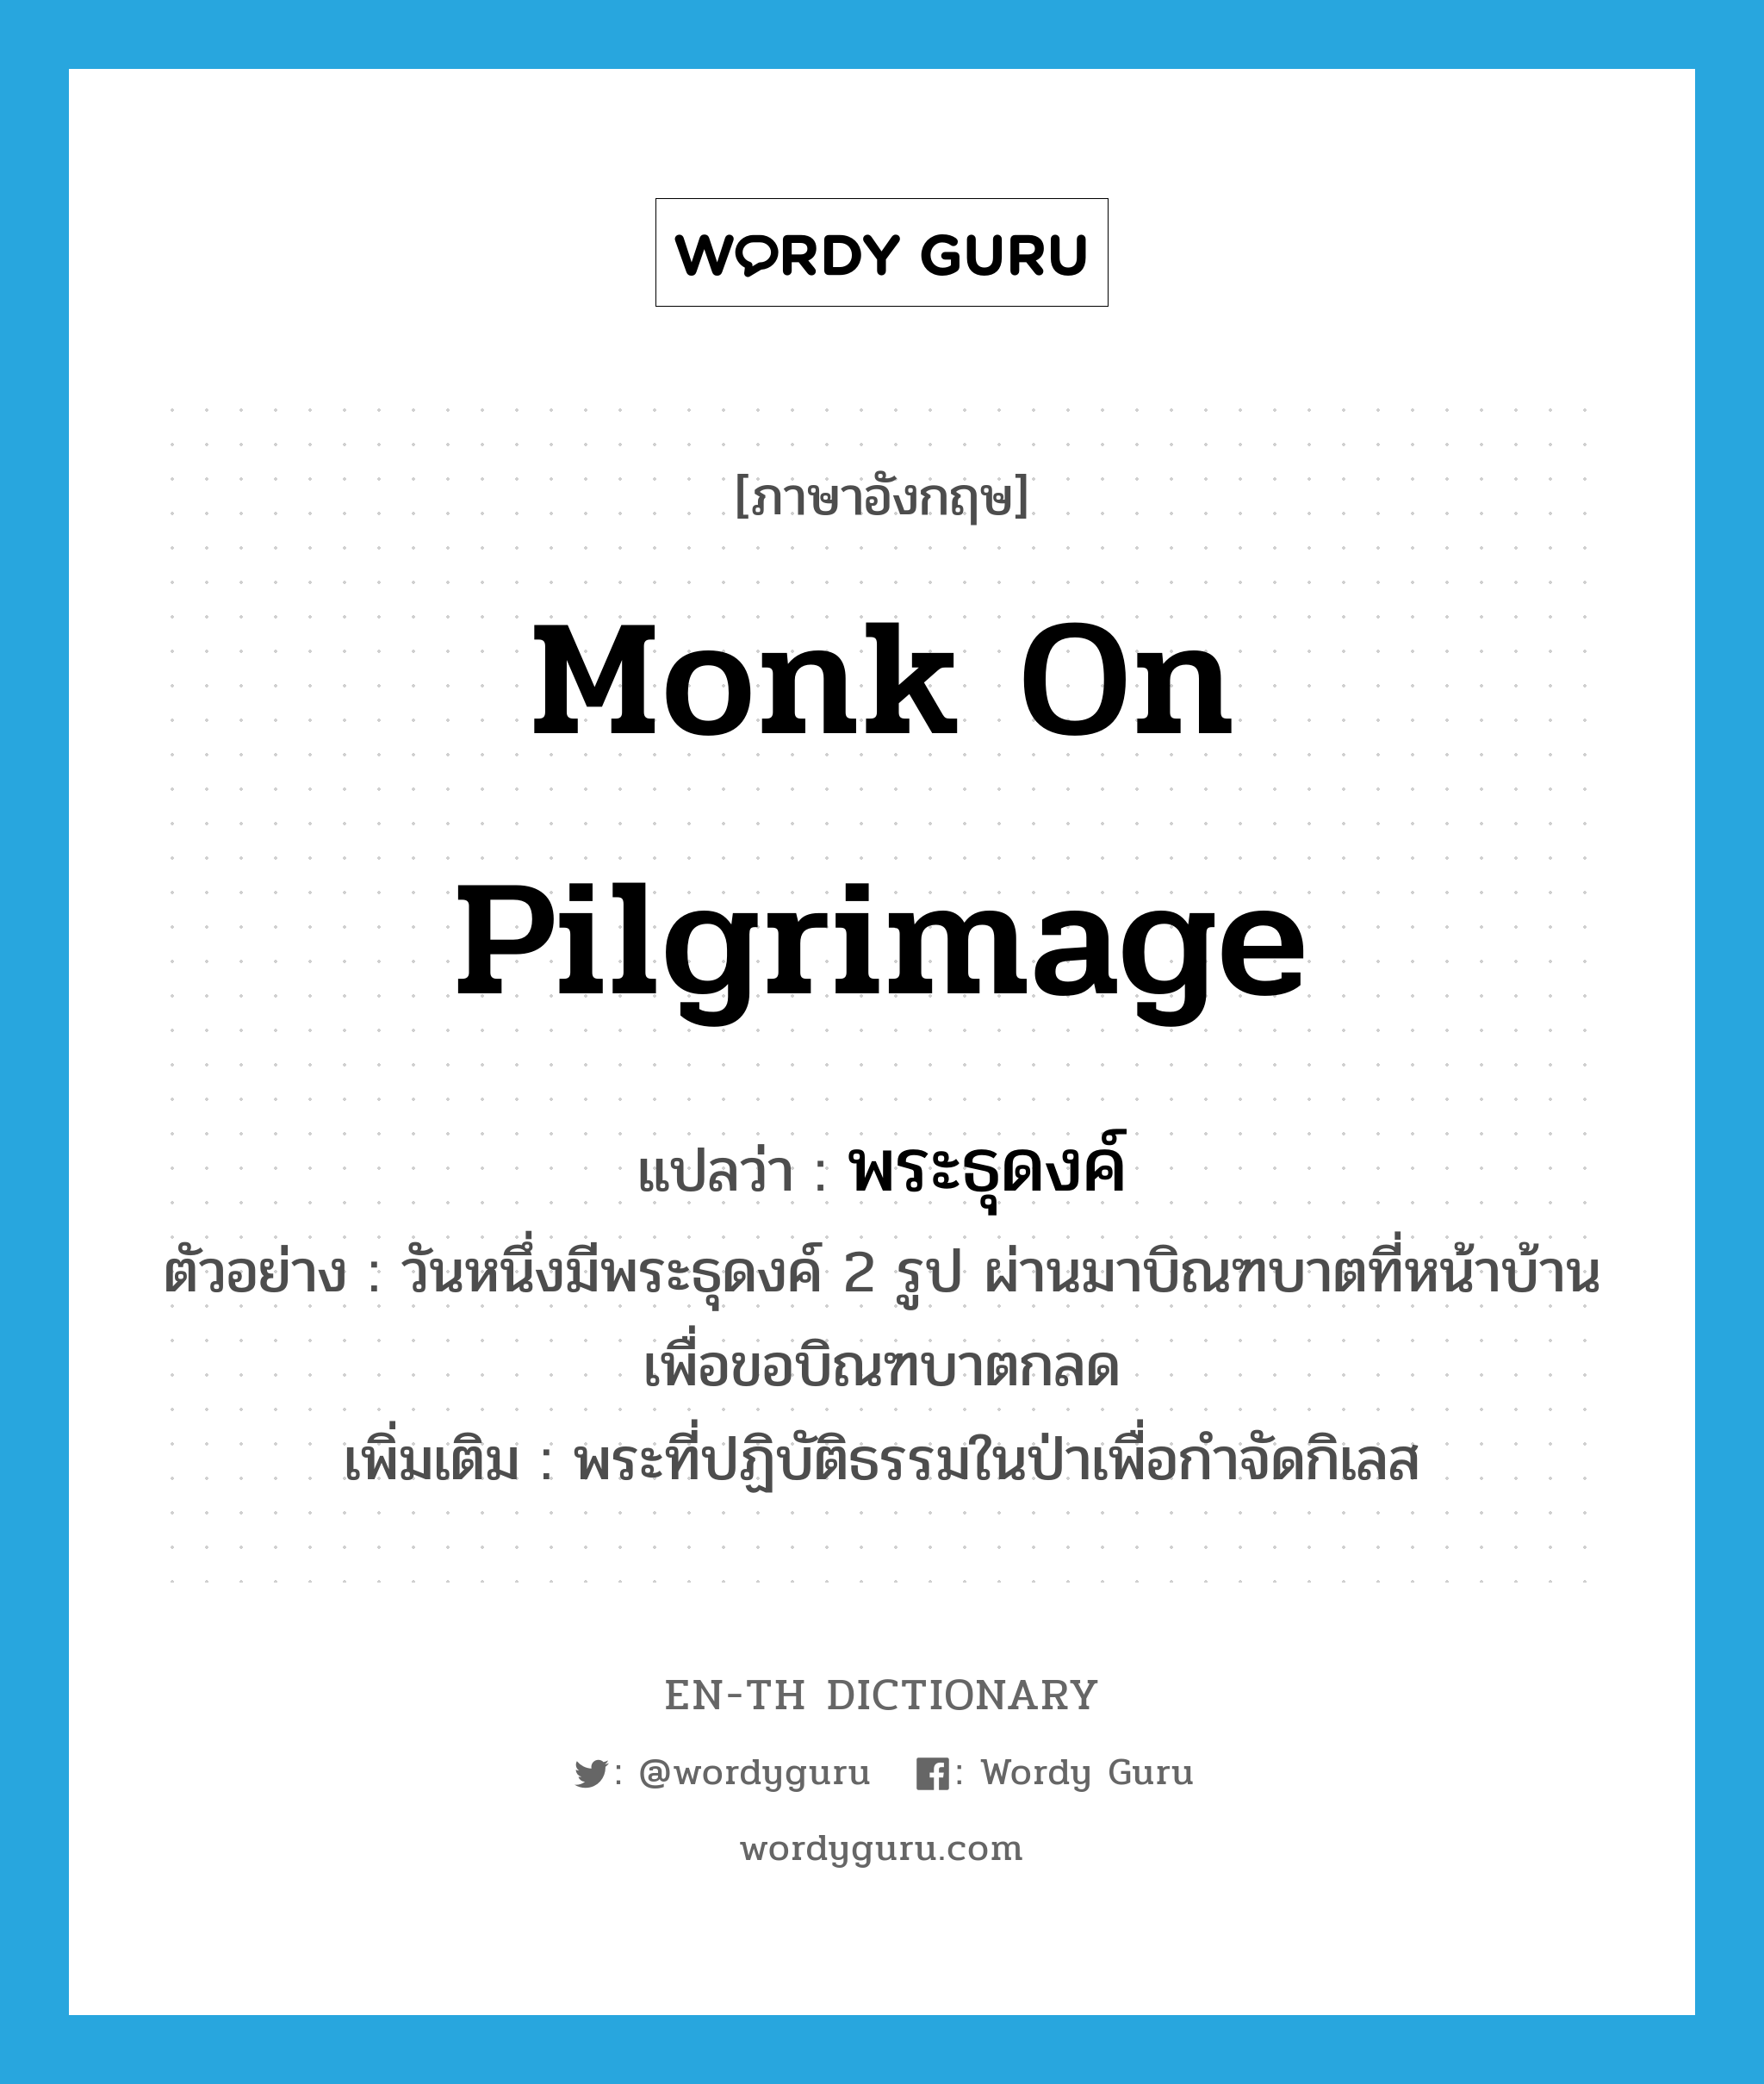 monk on pilgrimage แปลว่า?, คำศัพท์ภาษาอังกฤษ monk on pilgrimage แปลว่า พระธุดงค์ ประเภท N ตัวอย่าง วันหนึ่งมีพระธุดงค์ 2 รูป ผ่านมาบิณฑบาตที่หน้าบ้านเพื่อขอบิณฑบาตกลด เพิ่มเติม พระที่ปฏิบัติธรรมในป่าเพื่อกำจัดกิเลส หมวด N